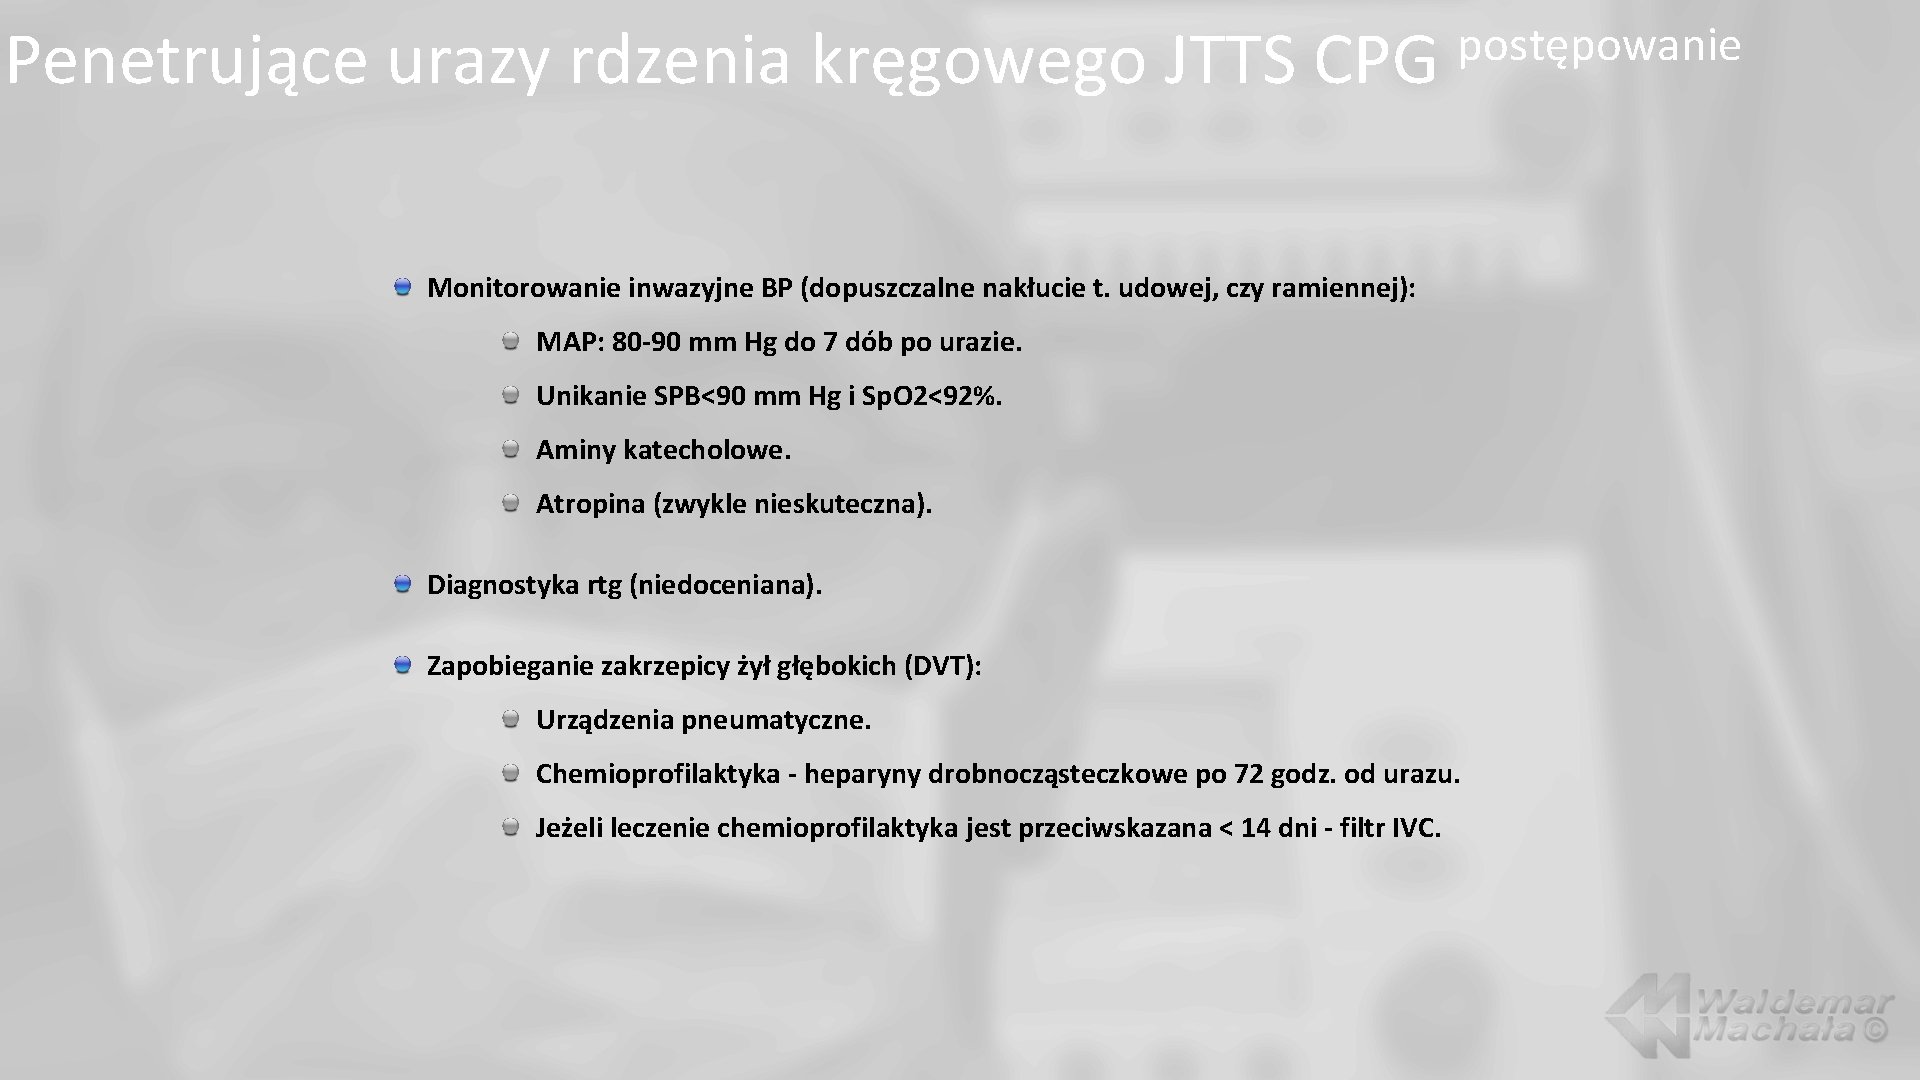 Penetrujące urazy rdzenia kręgowego JTTS CPG postępowanie Monitorowanie inwazyjne BP (dopuszczalne nakłucie t. udowej,